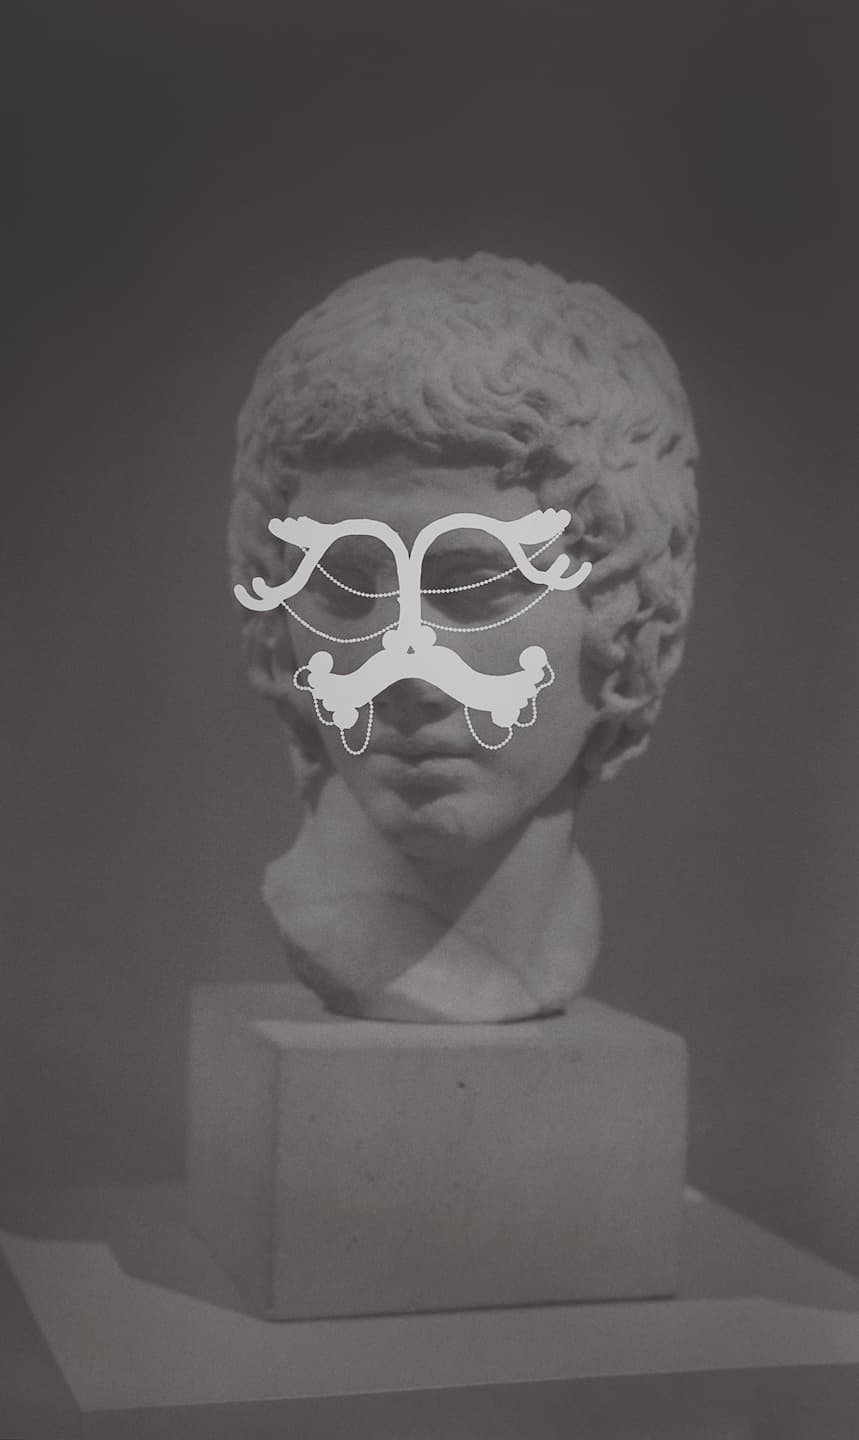 Anita Gauran, (Sans titre), 2020. Photographie argentique noir et blanc sur papier baryté, 64,5 x 38,5 cm. Achat à l’artiste. Collection Frac Bretagne. © droits réservés